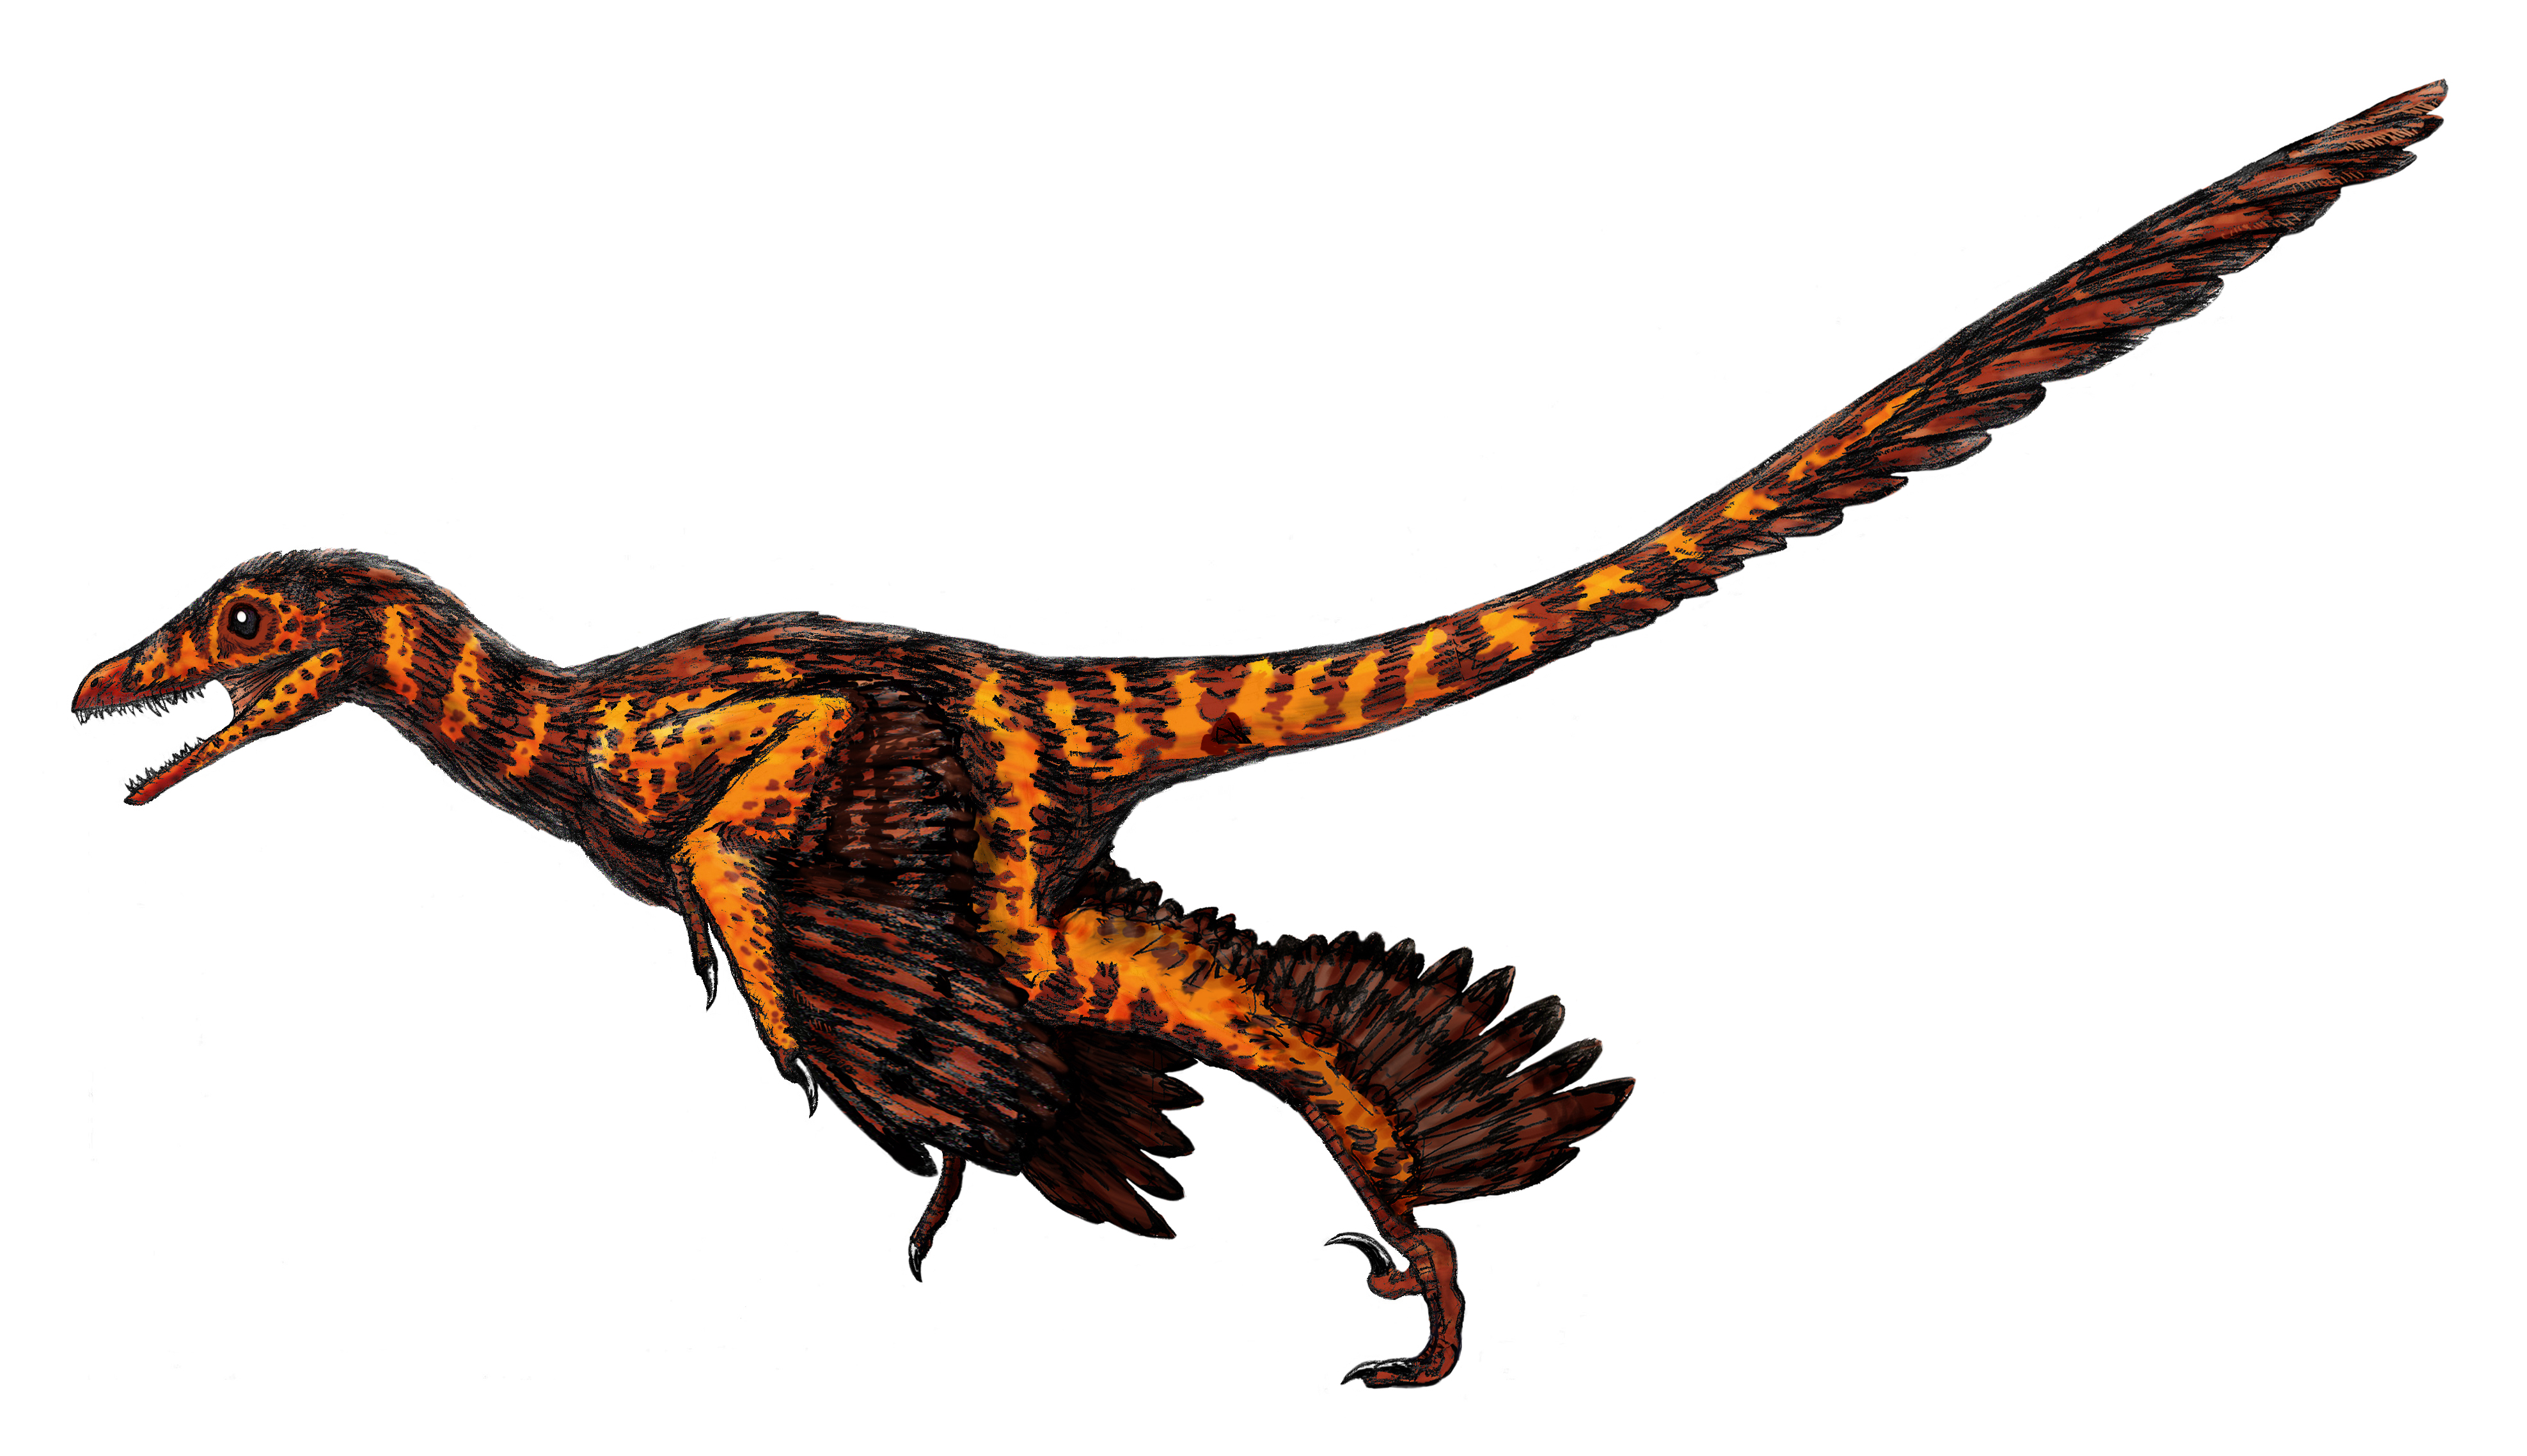 http://upload.wikimedia.org/wikipedia/commons/a/a9/Sinornithosaurus.jpg